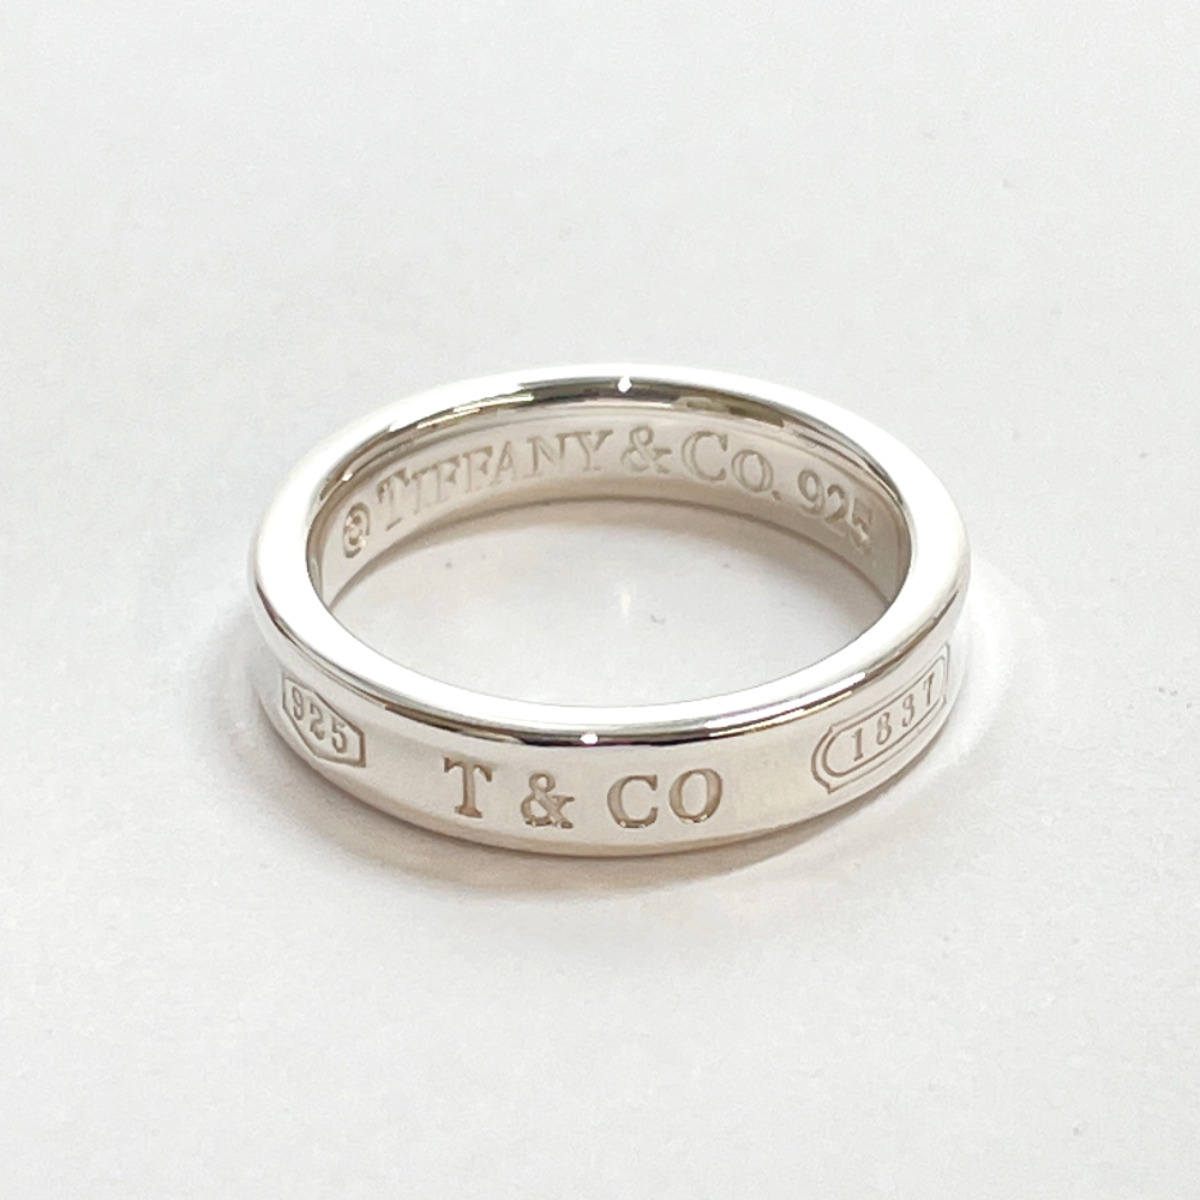 ★6.5号★ティファニー TIFFANY&Co. リング・指輪 1837 シルバー925/ シルバー アクセサリー ジュエリー